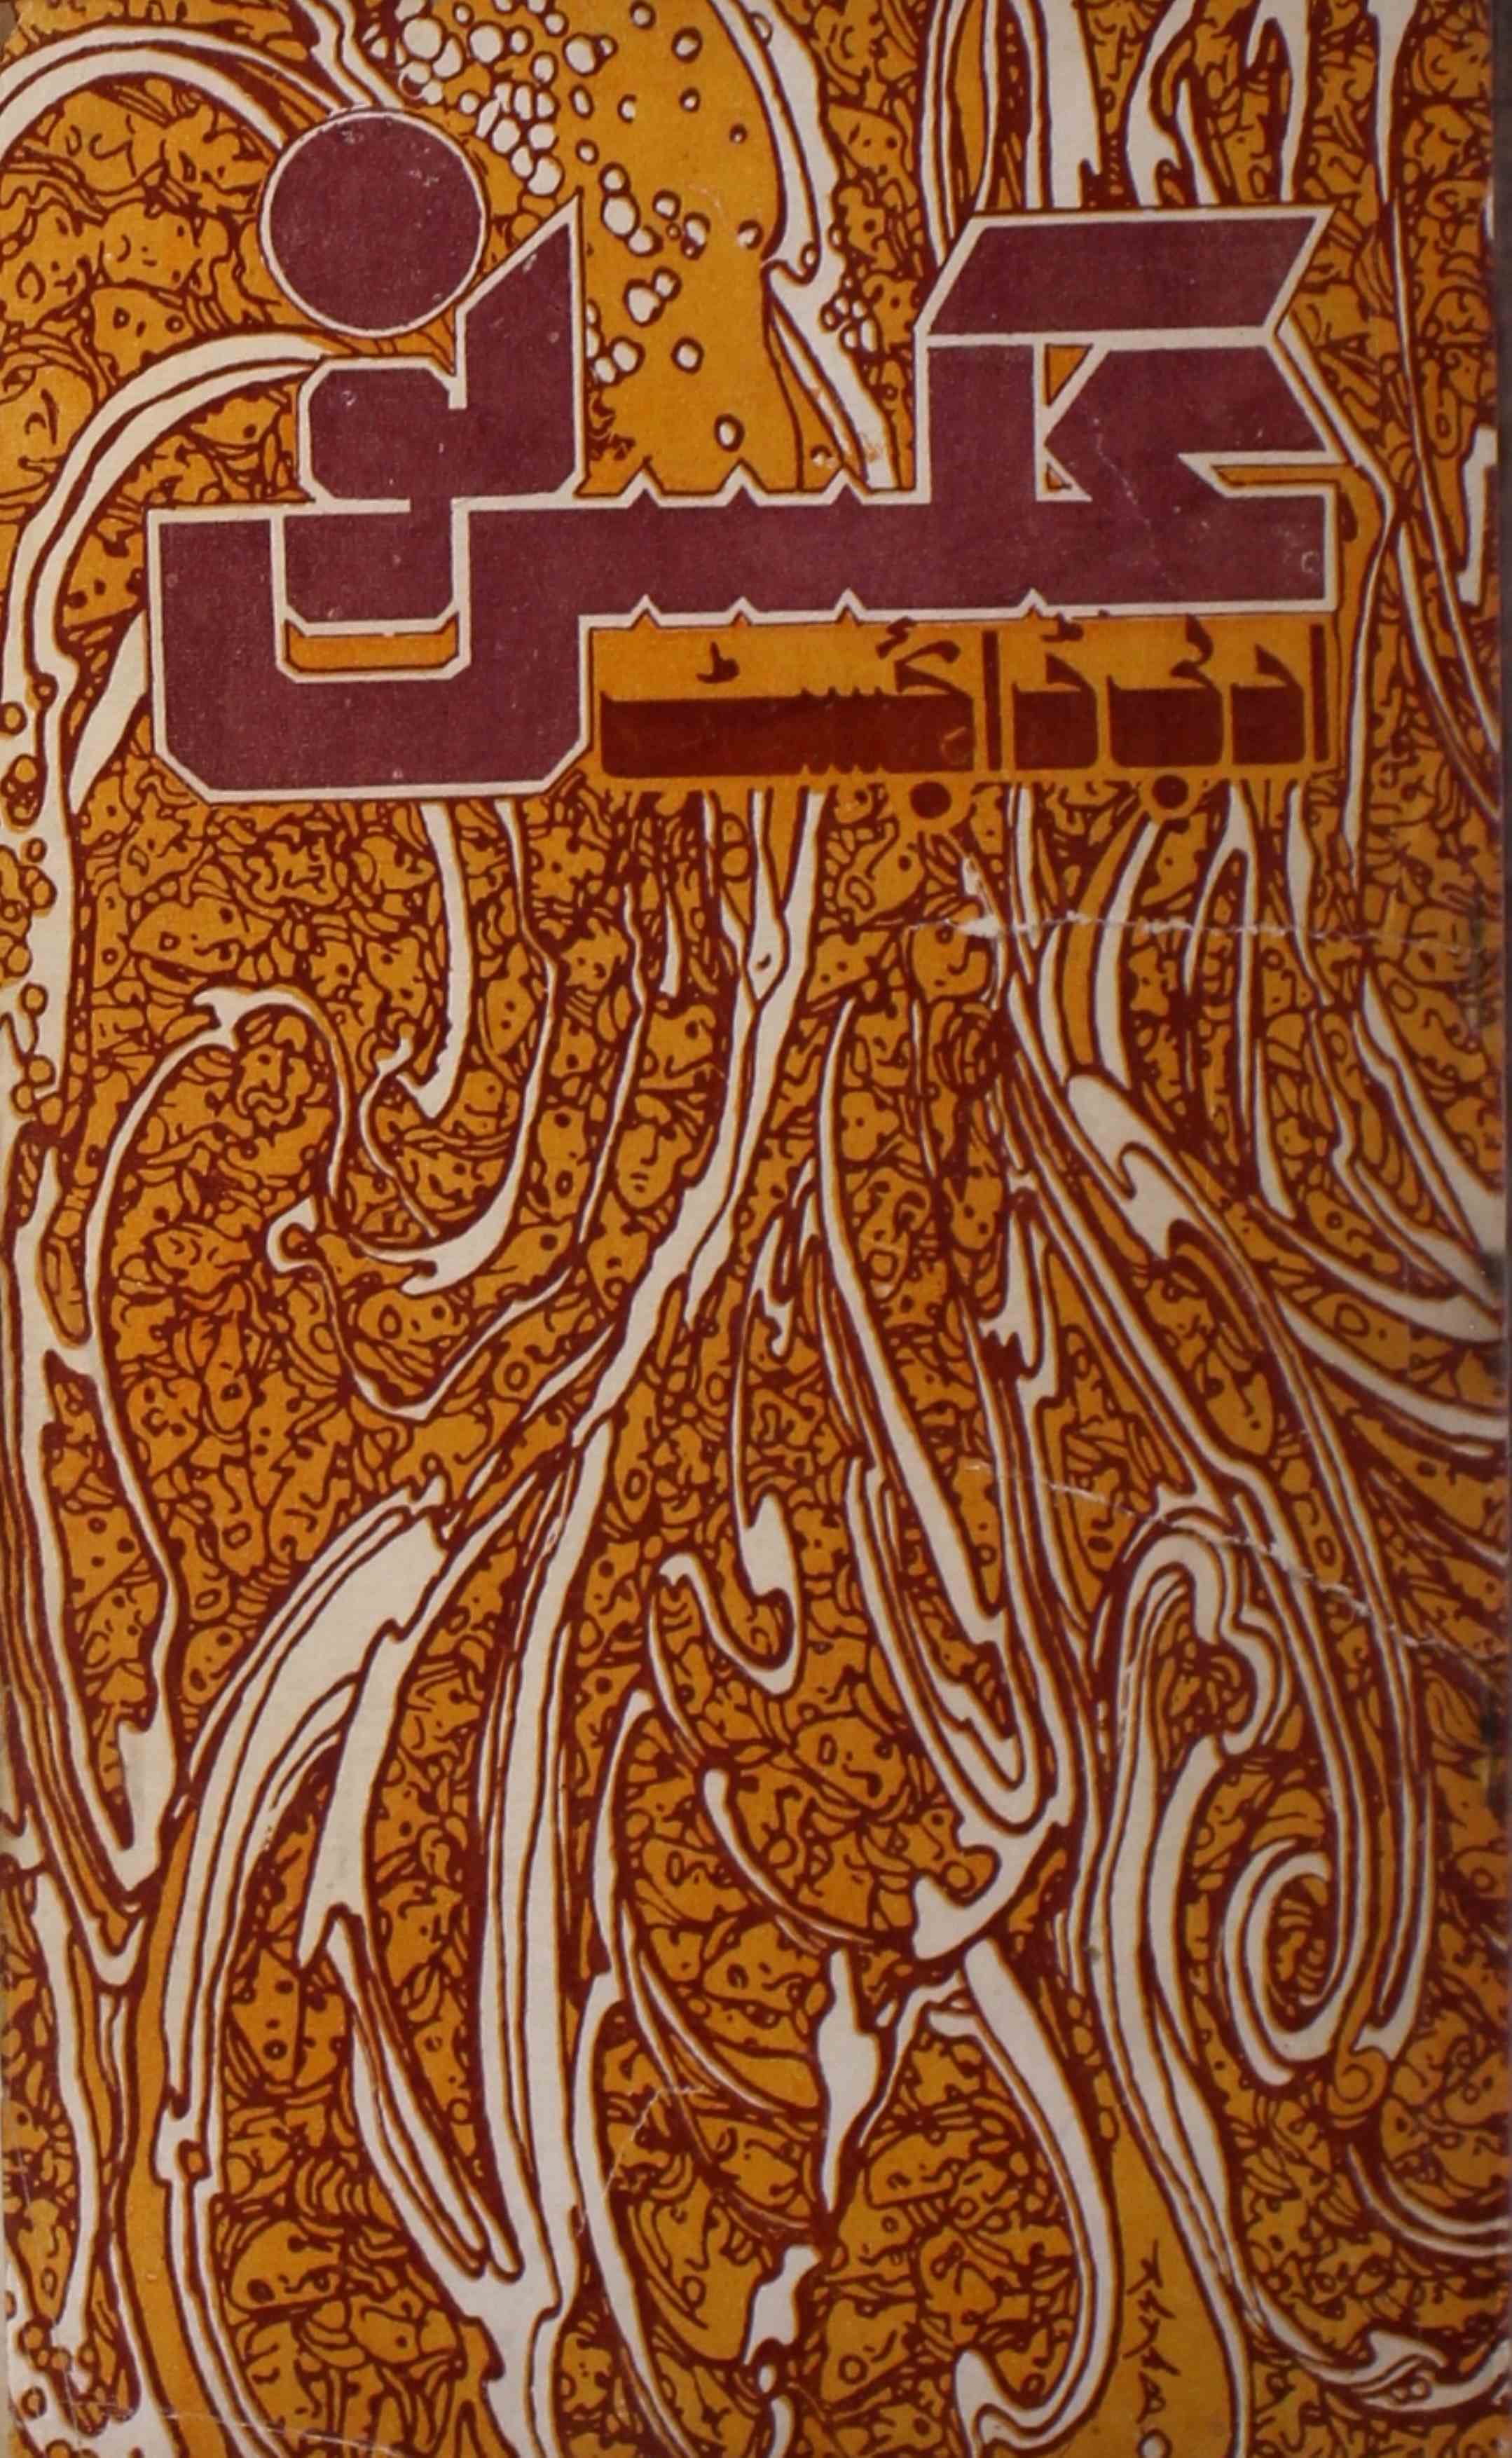 अक्स-ए-नौ- Magazine by बेगम हसन ज़मानी, सय्यद आबिद मिर्ज़ा मुकर्रम लखनवी 